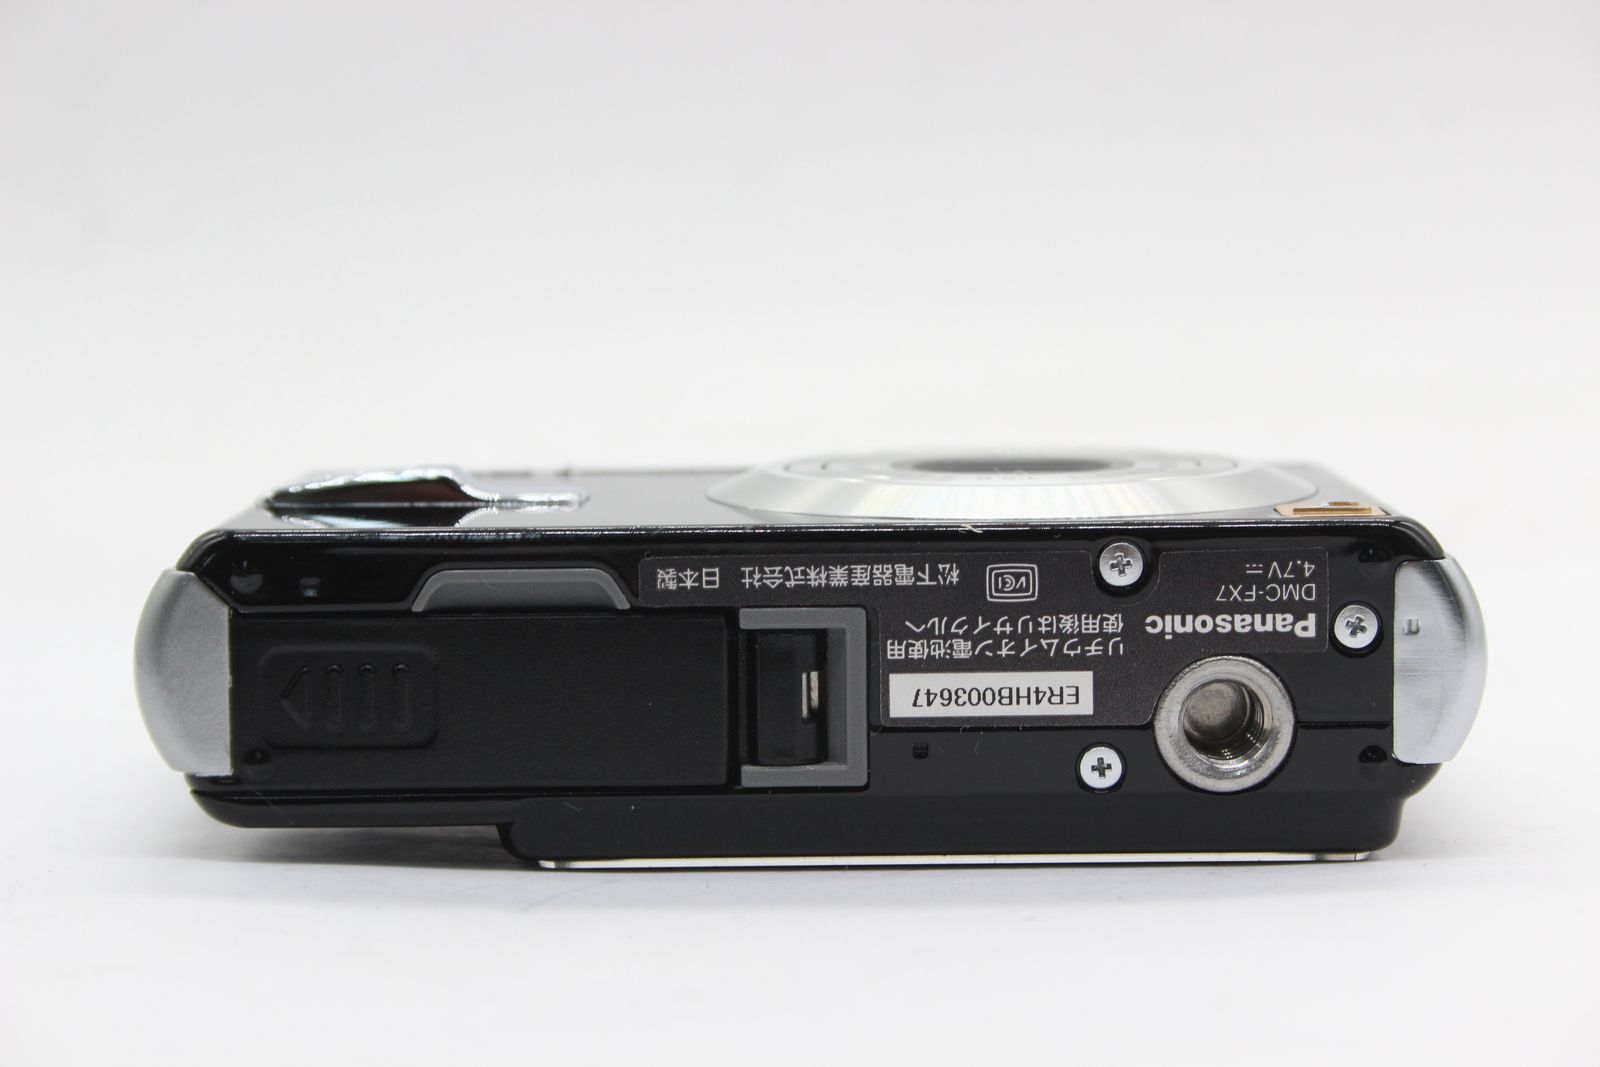 【美品 返品保証】 パナソニック Panasonic LUMIX DMC-FX7 ブラック バッテリー チャージャー付き コンパクトデジタルカメラ  s5236